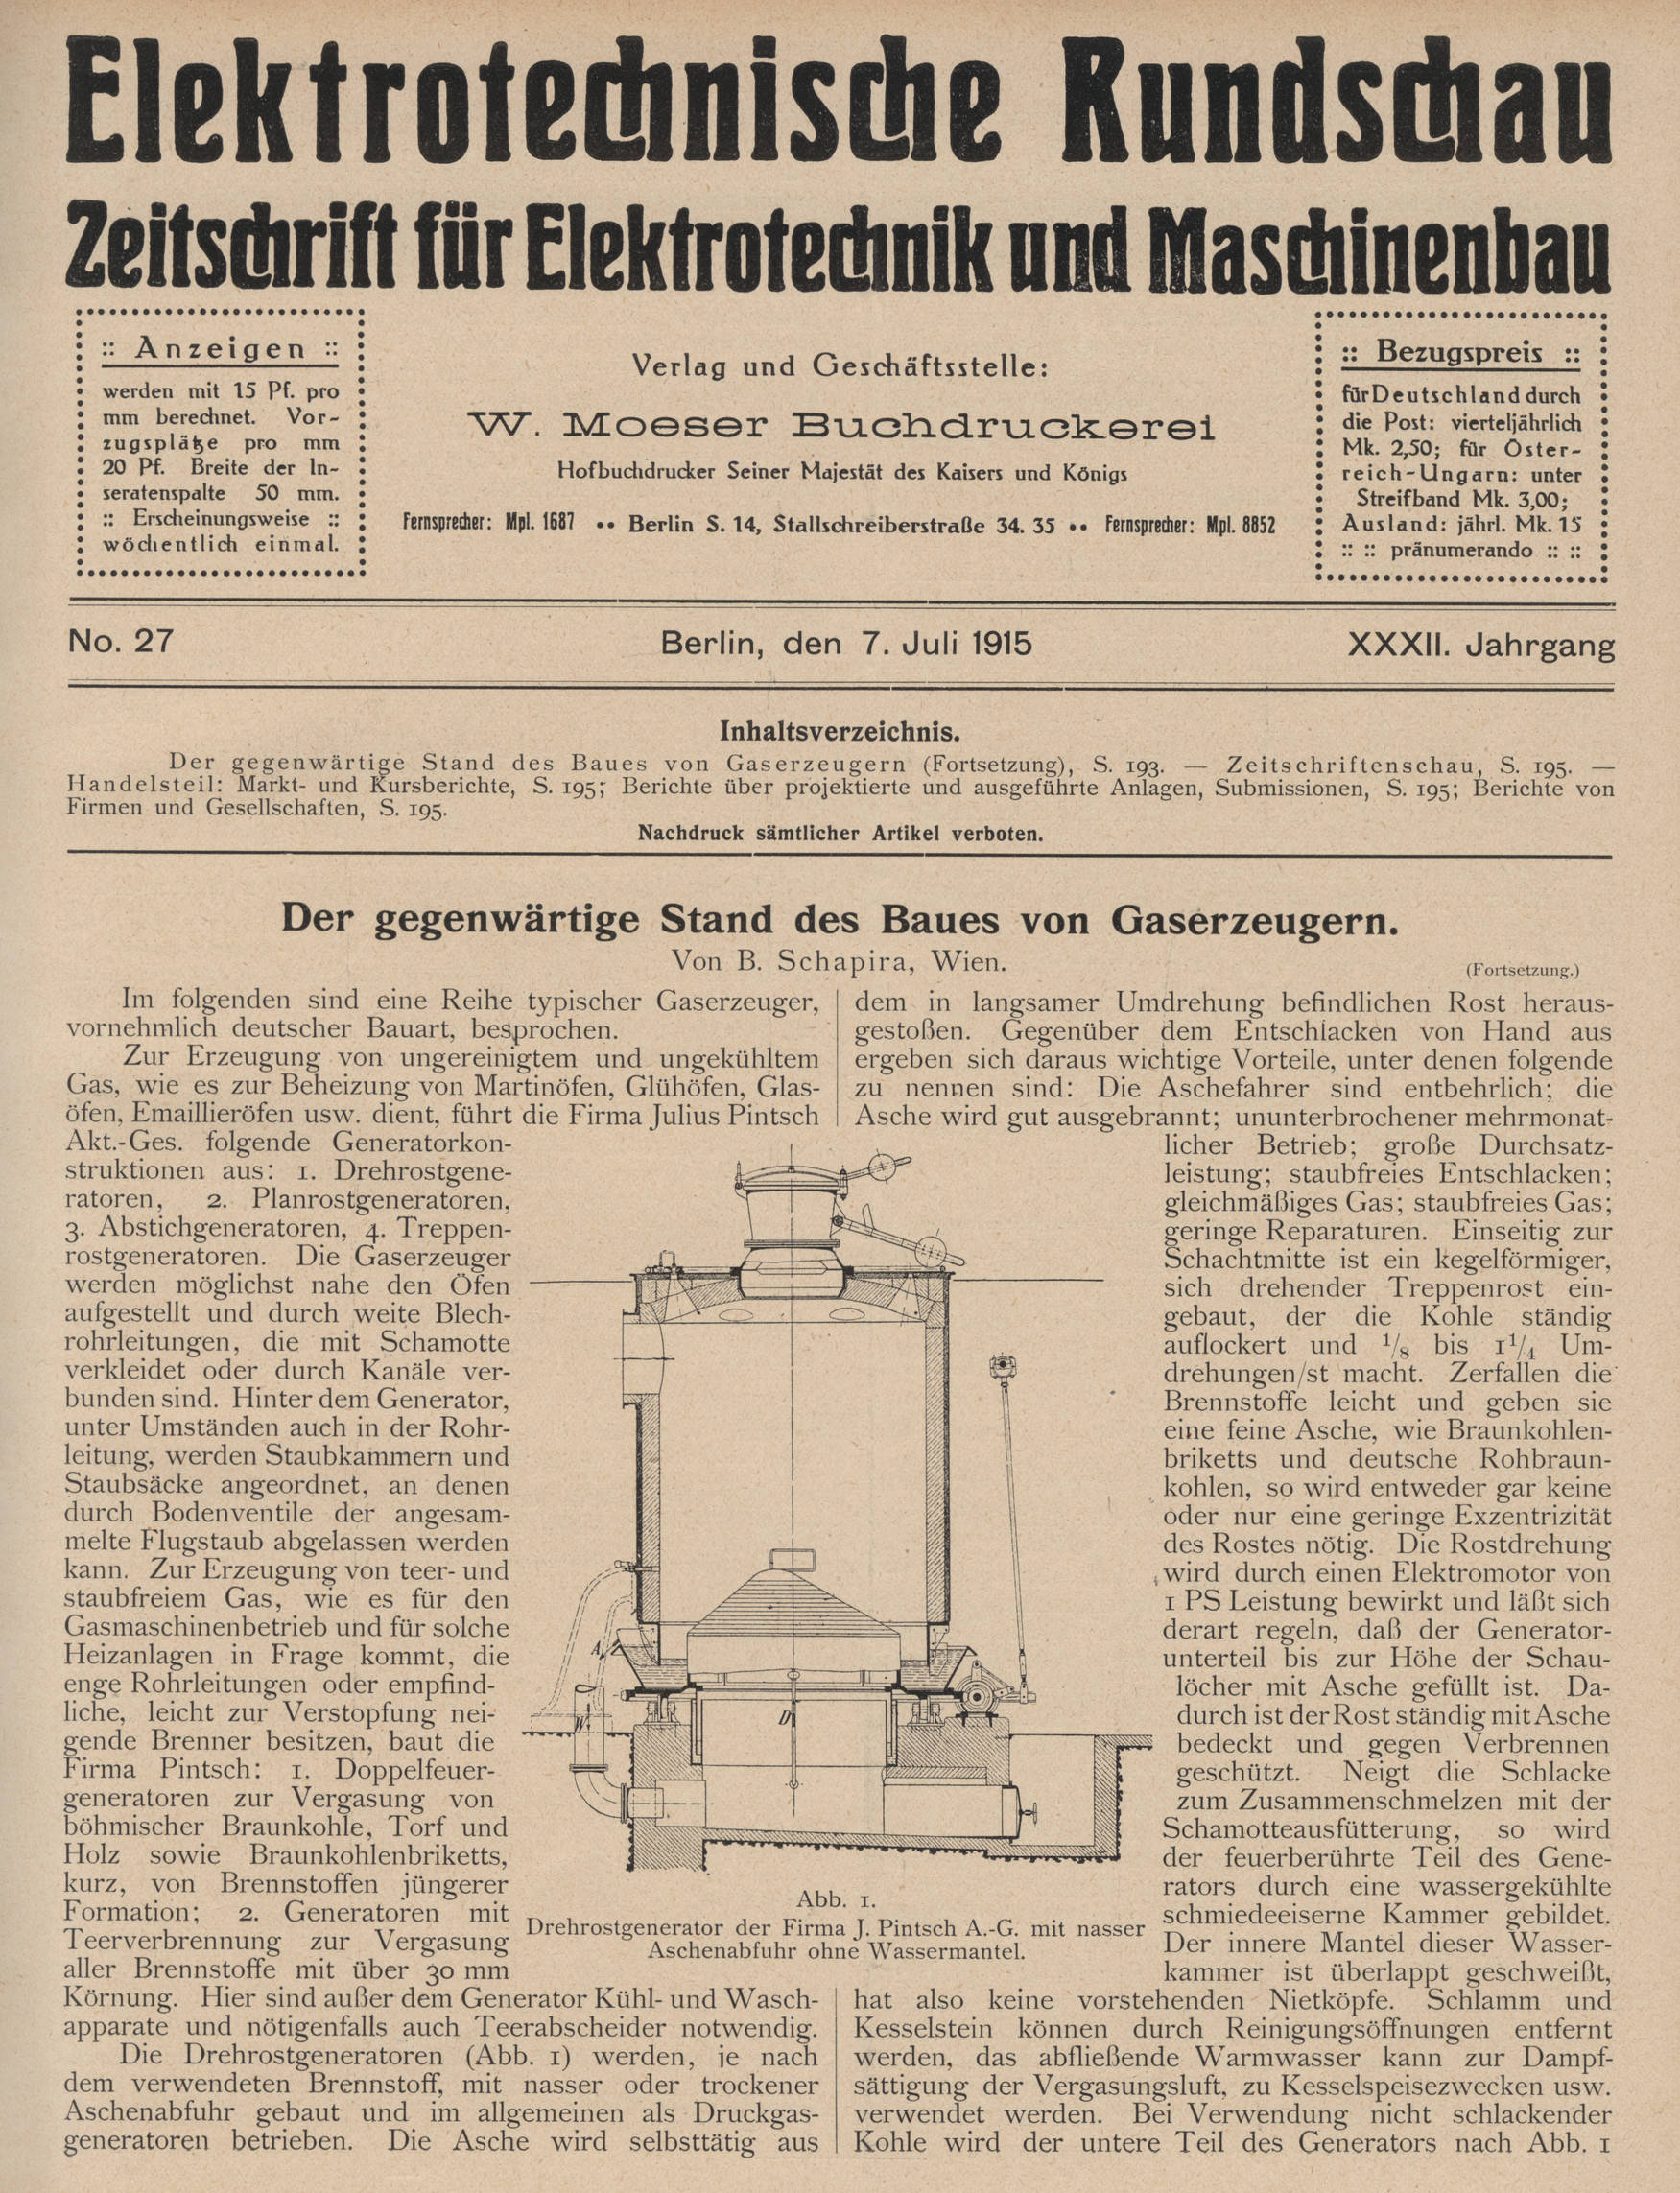 Elektrotechnische Rundschau : Zeitschrift für Elektrotechnik und Maschinenbau + Polytechnische Rundschau, No. 27, XXXII. Jahrgang